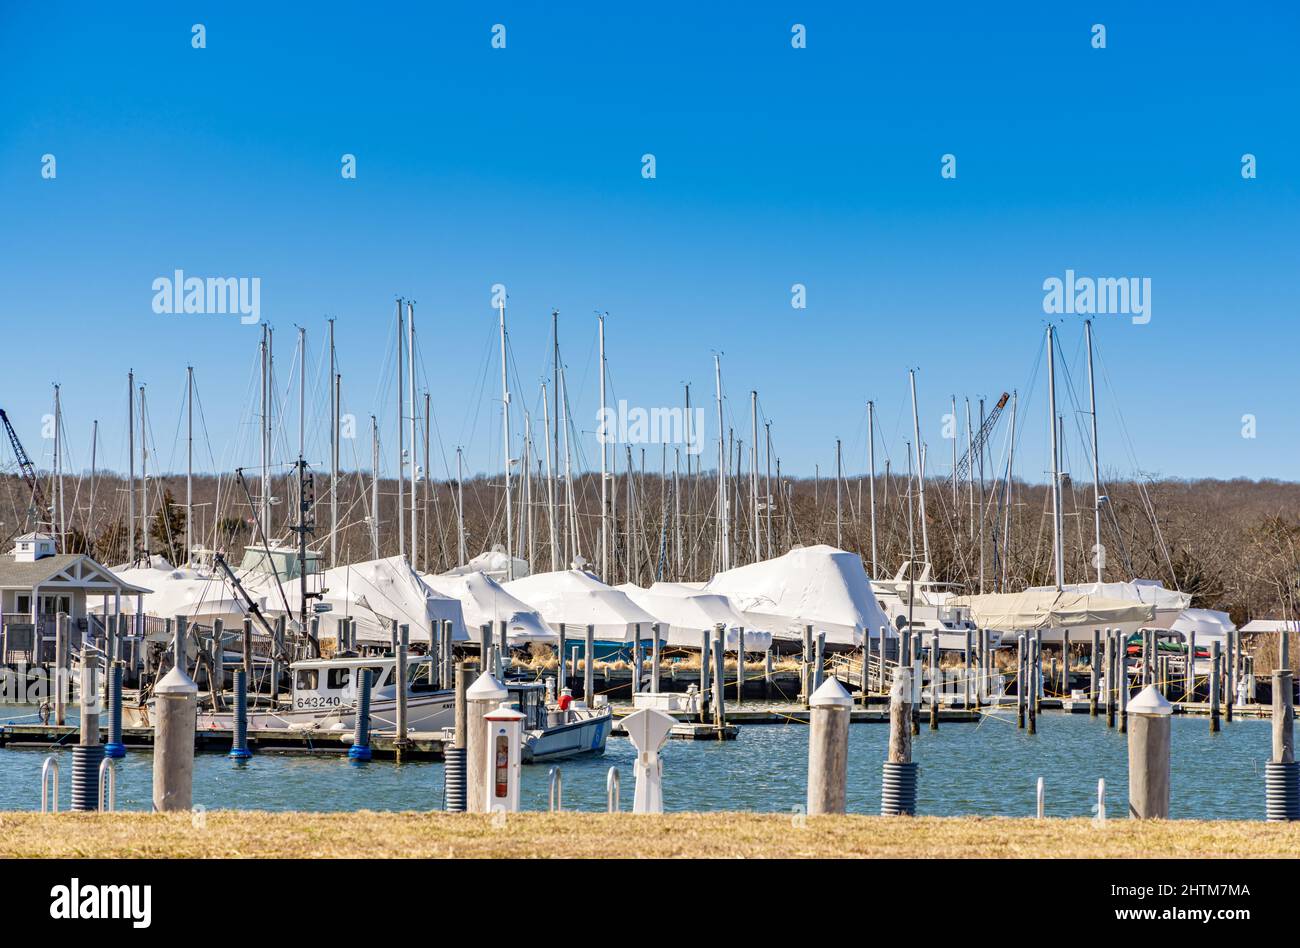 Many winterized sail boats at Three Mile Harbor Marina Stock Photo